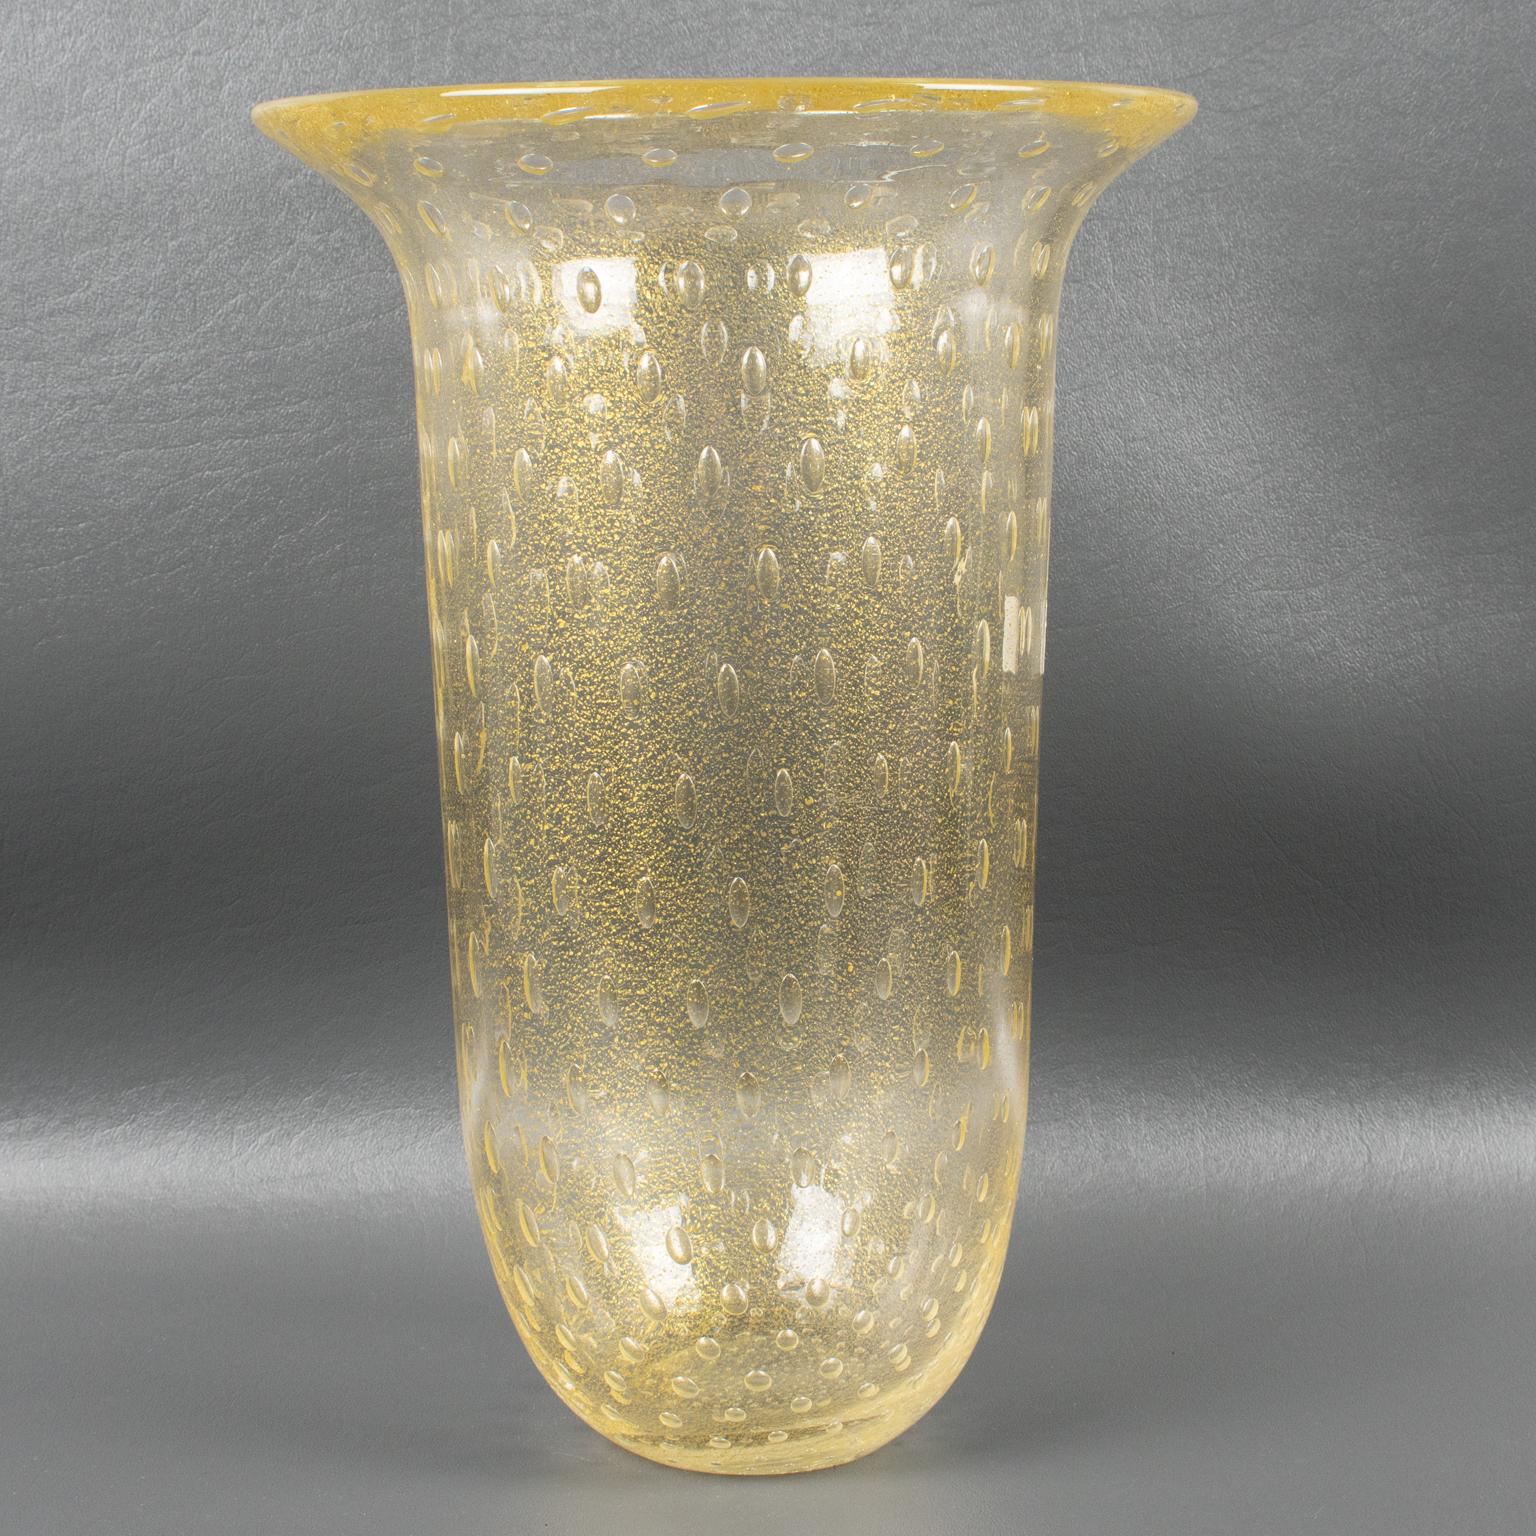 Italian Art Glass Murano Vase Gold Flakes and Bubbles by Gambaro & Poggi For Sale 3